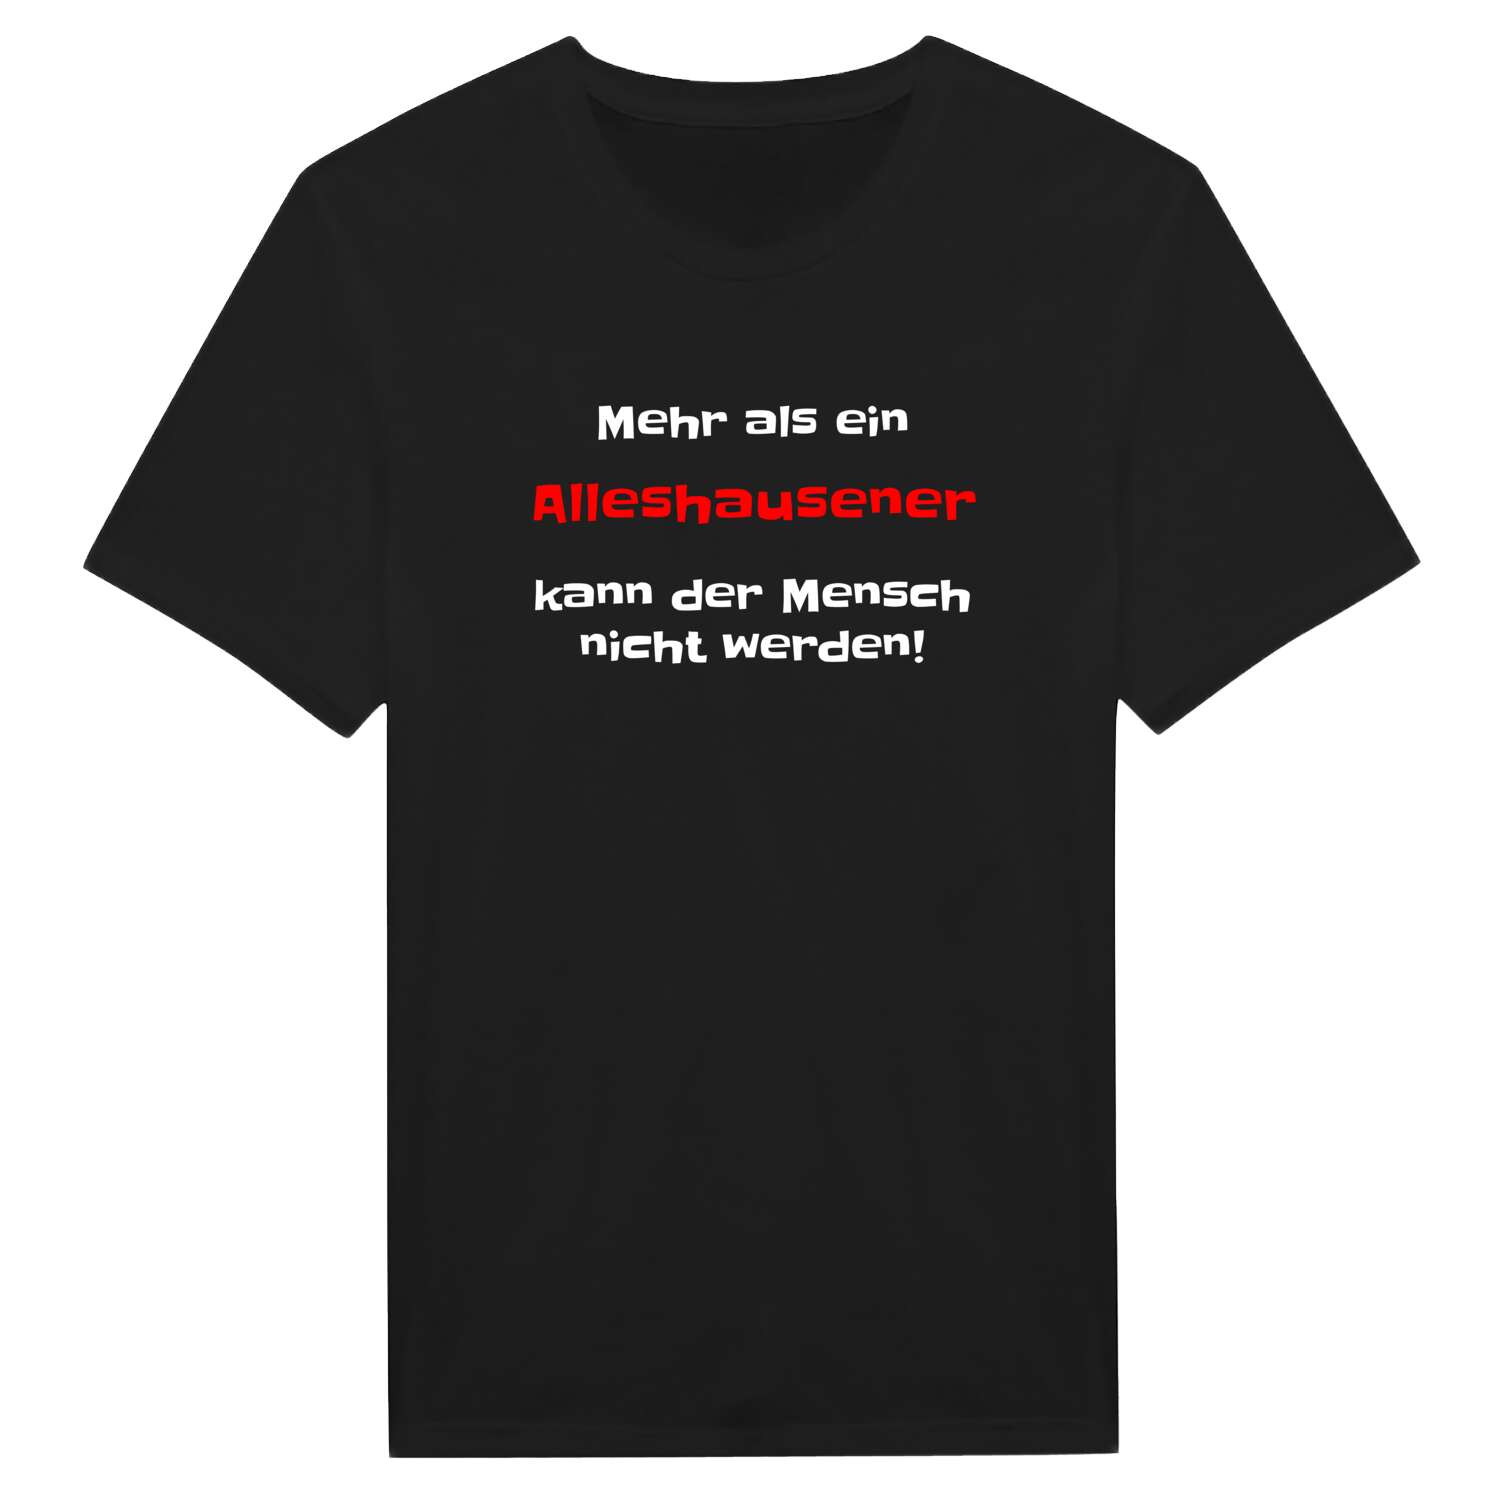 Alleshausen T-Shirt »Mehr als ein«